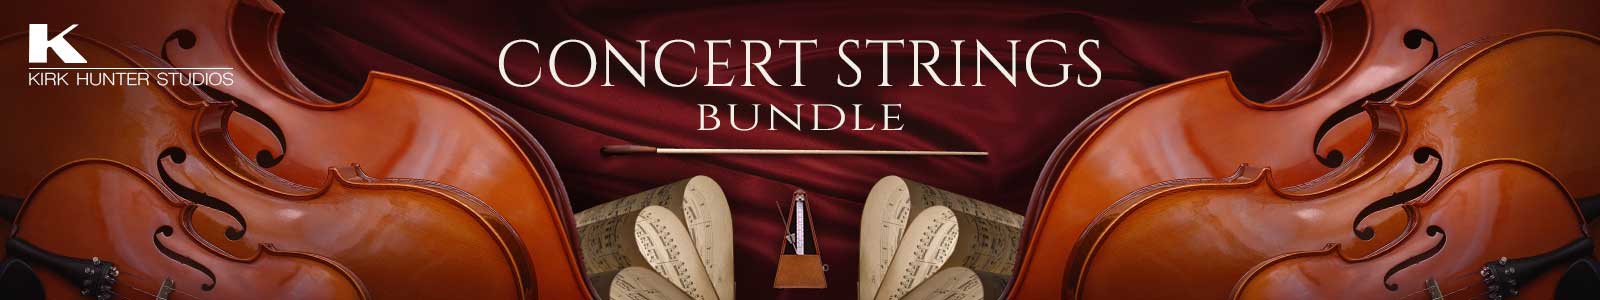 Concert Strings Bundle by Kirk Hunter Studios